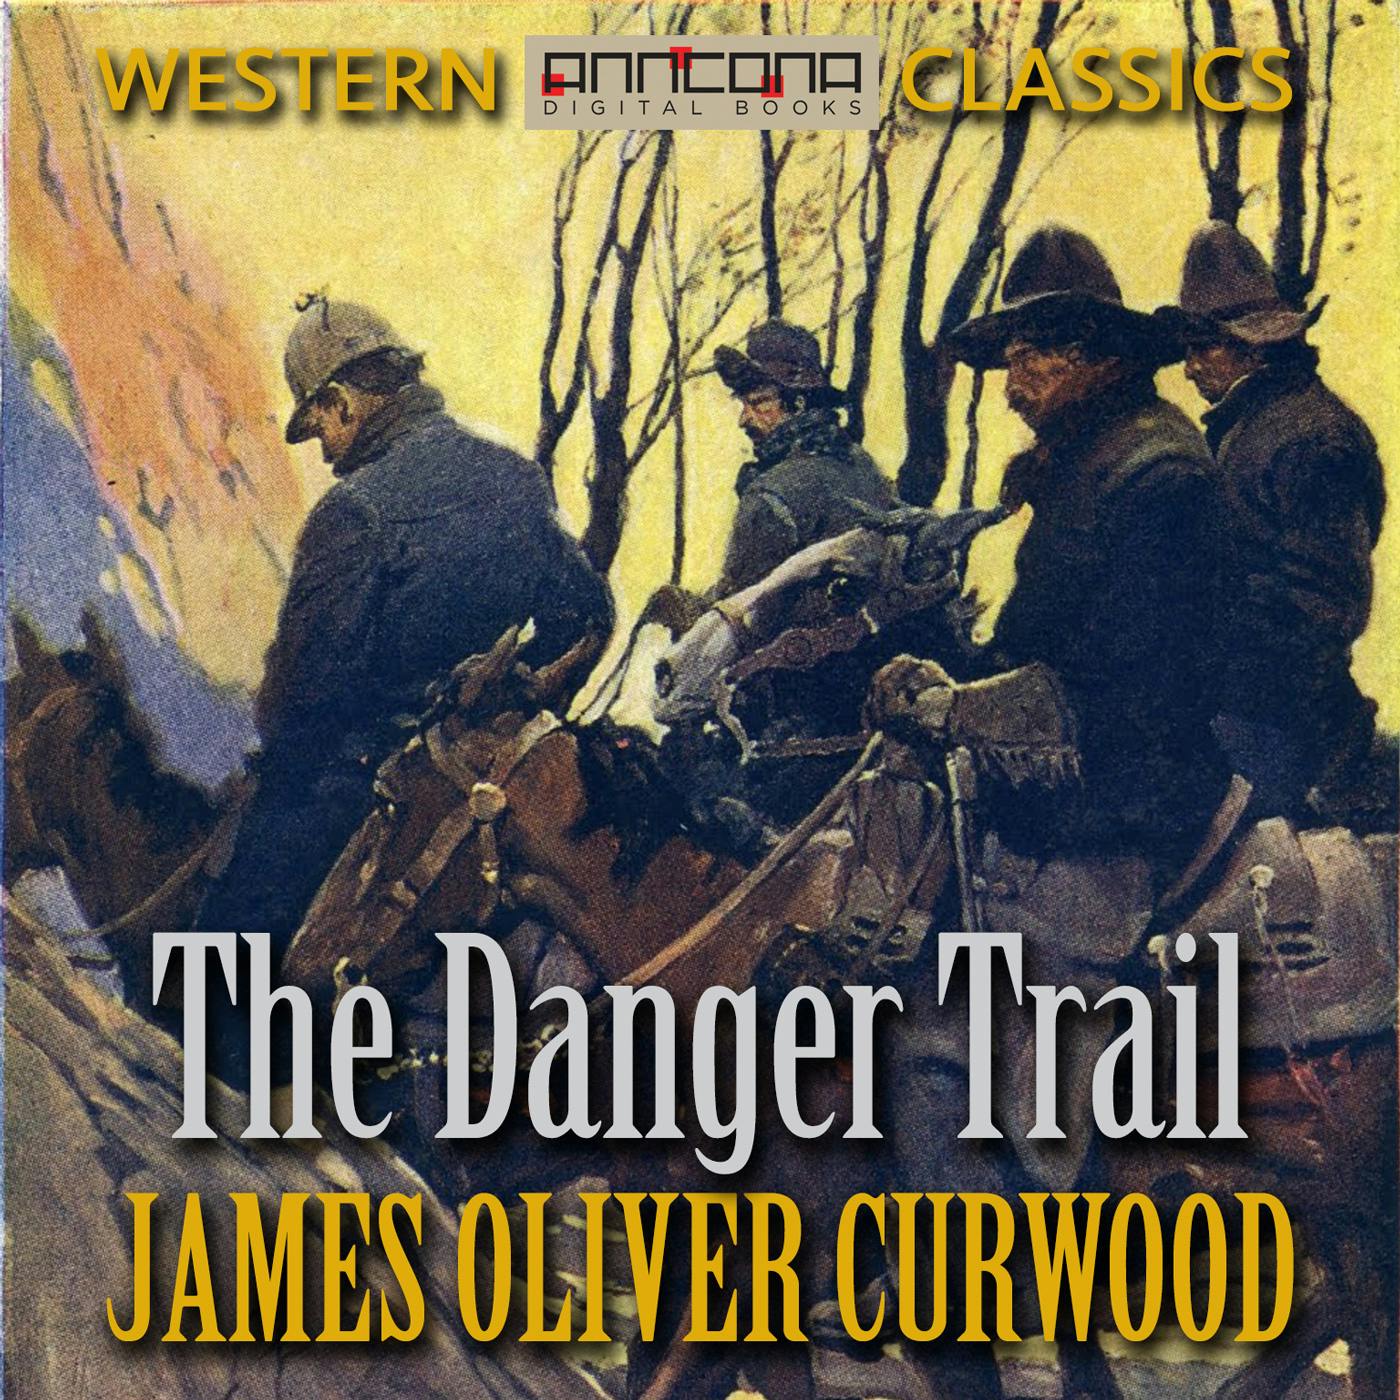 The Danger Trail - James Oliver Curwood